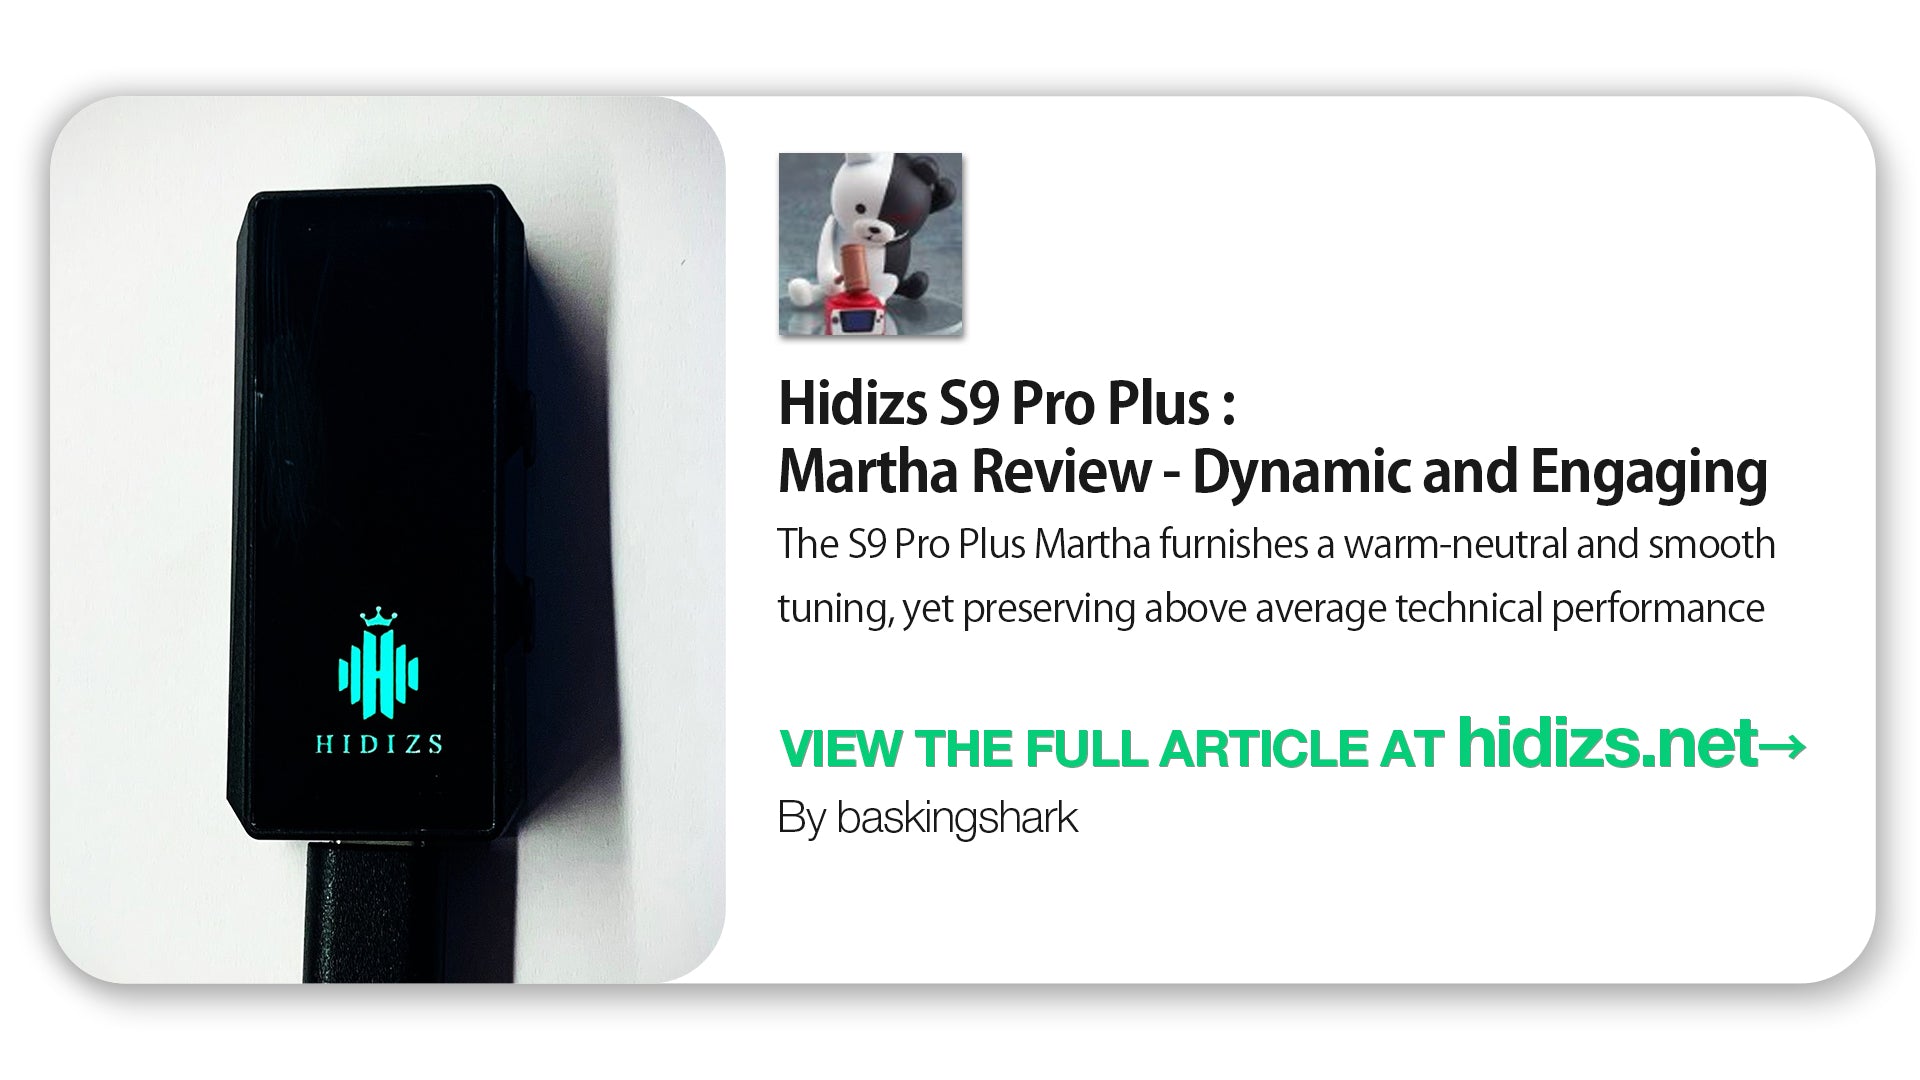 Hidizs S9 Pro Plus Martha Review - baskingshark